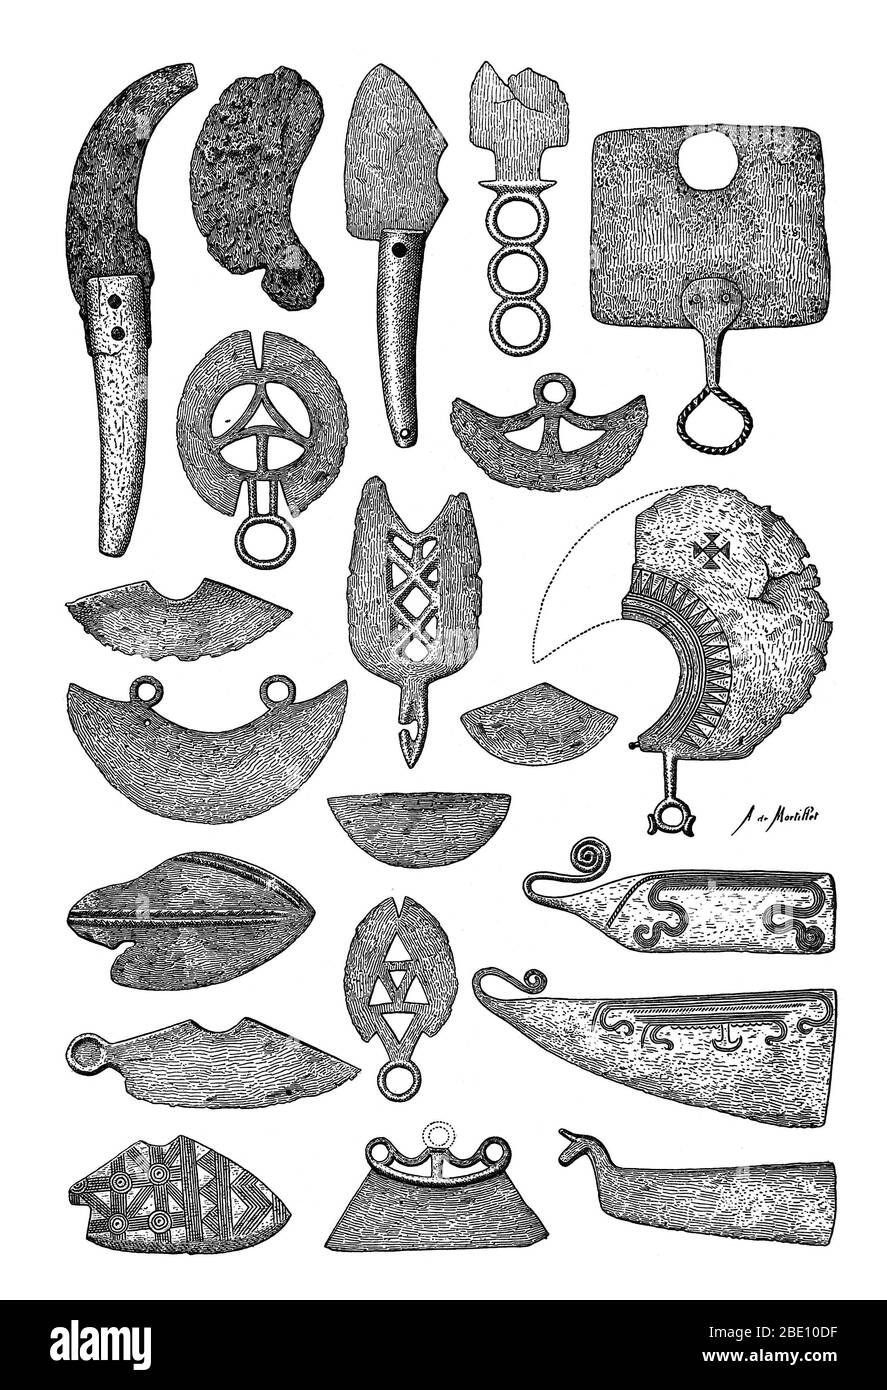 Illustration de rasoirs préhistoriques en bronze. L'objet le plus ancien de type rasoir a été daté à 18 000 avant J.-C. Banque D'Images